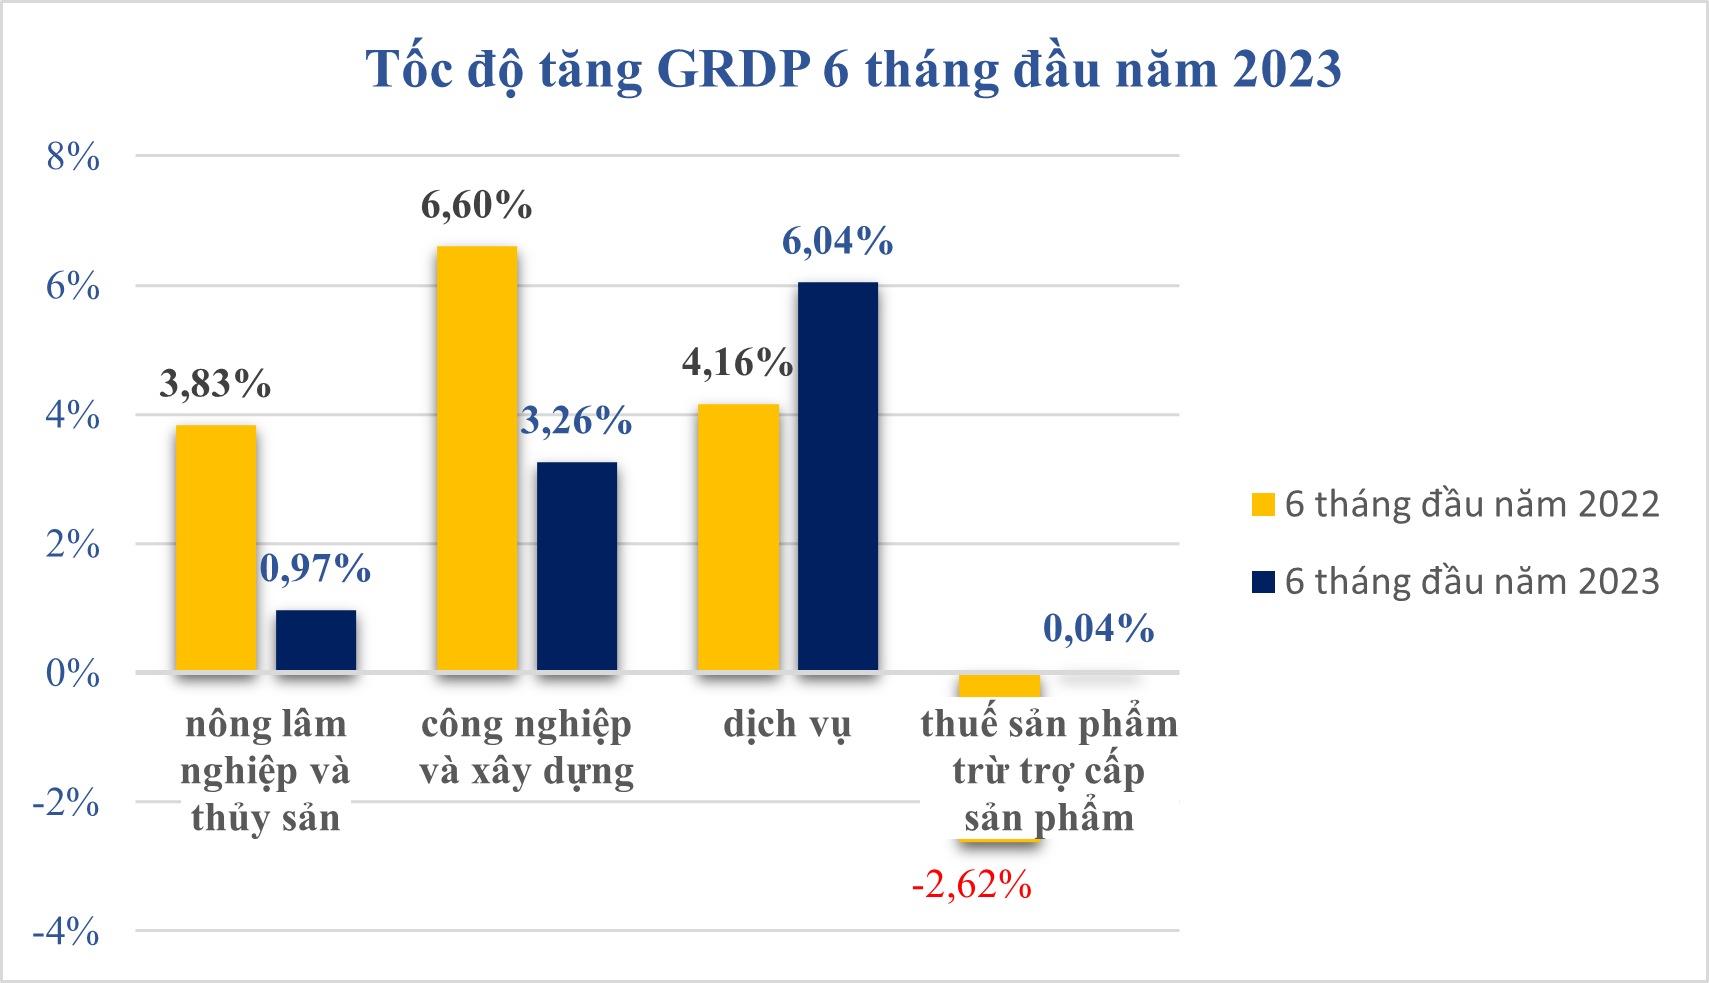 Tổng sản phẩm trên địa bàn 6 tháng đầu năm 2023 Tiền Giang đạt 3,03%